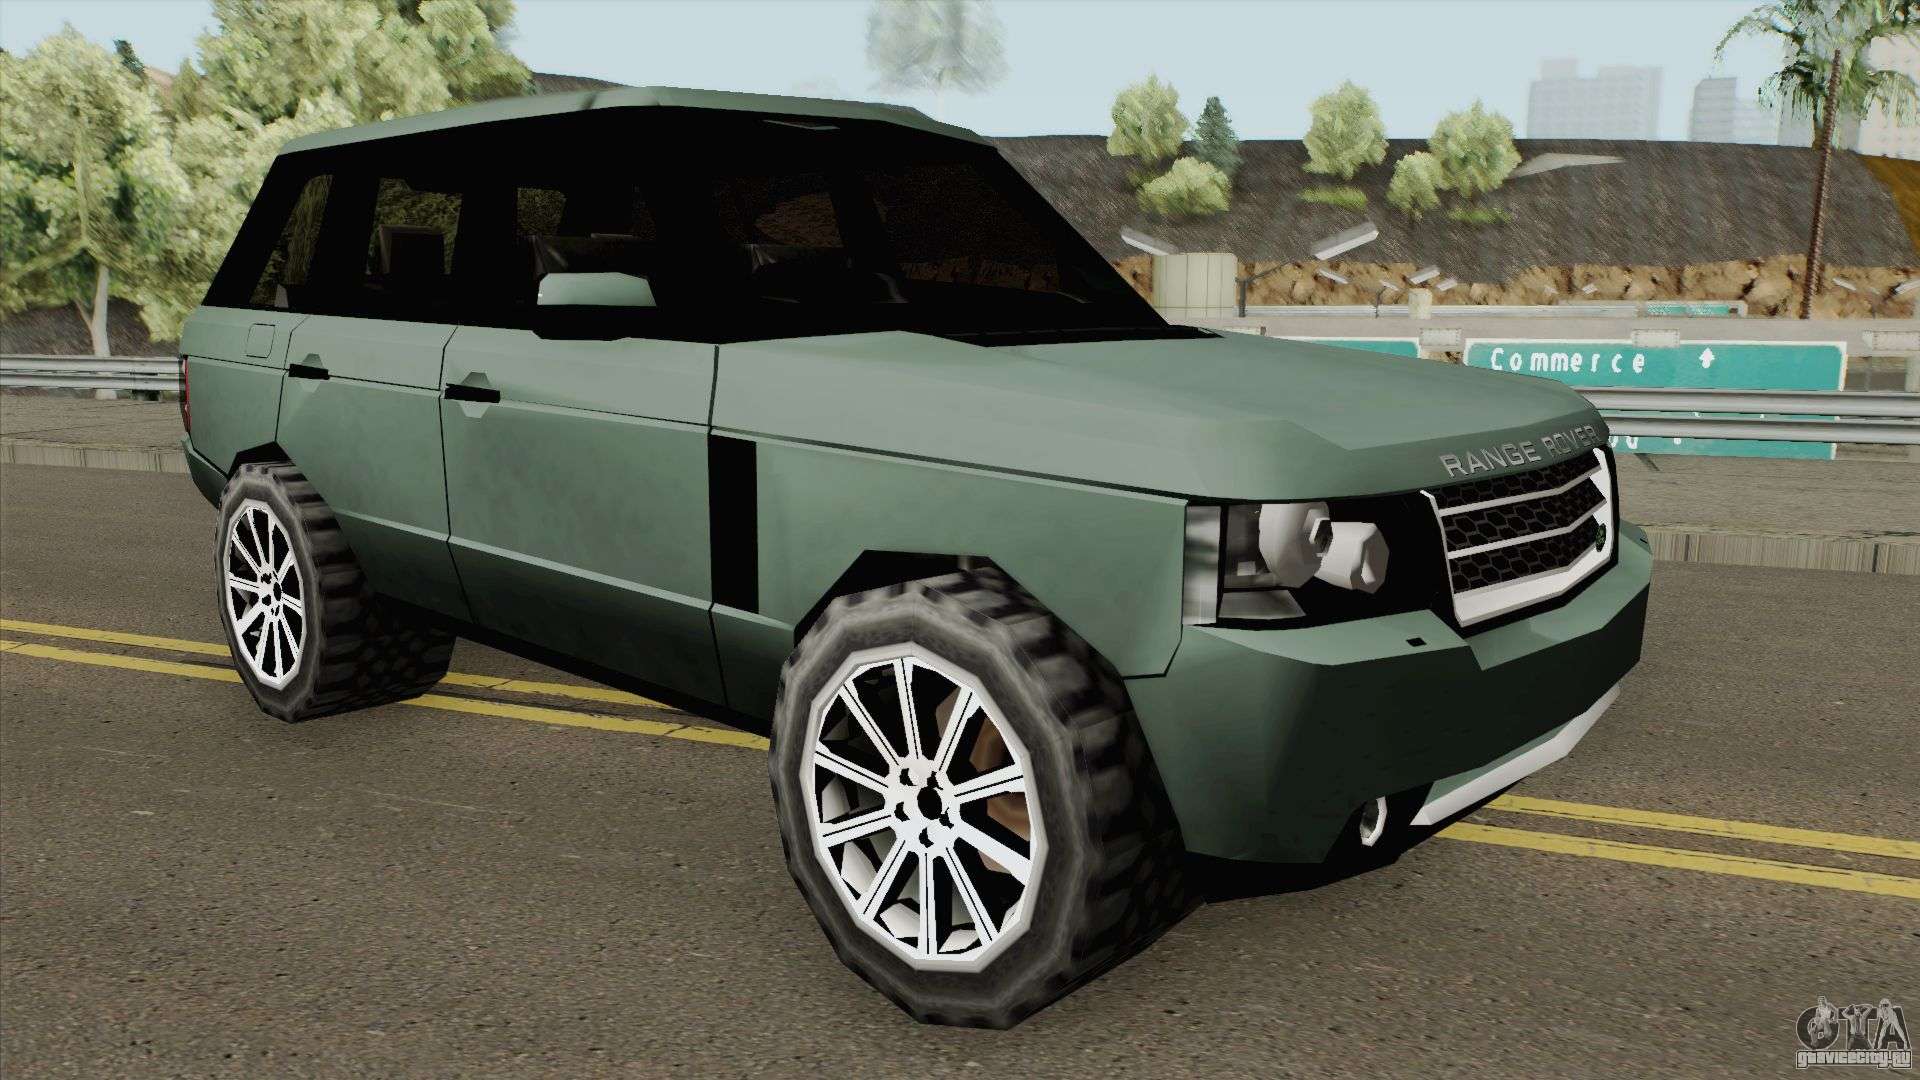 Land Rover Range Rover 2009 (SA Style) для GTA San Andreas